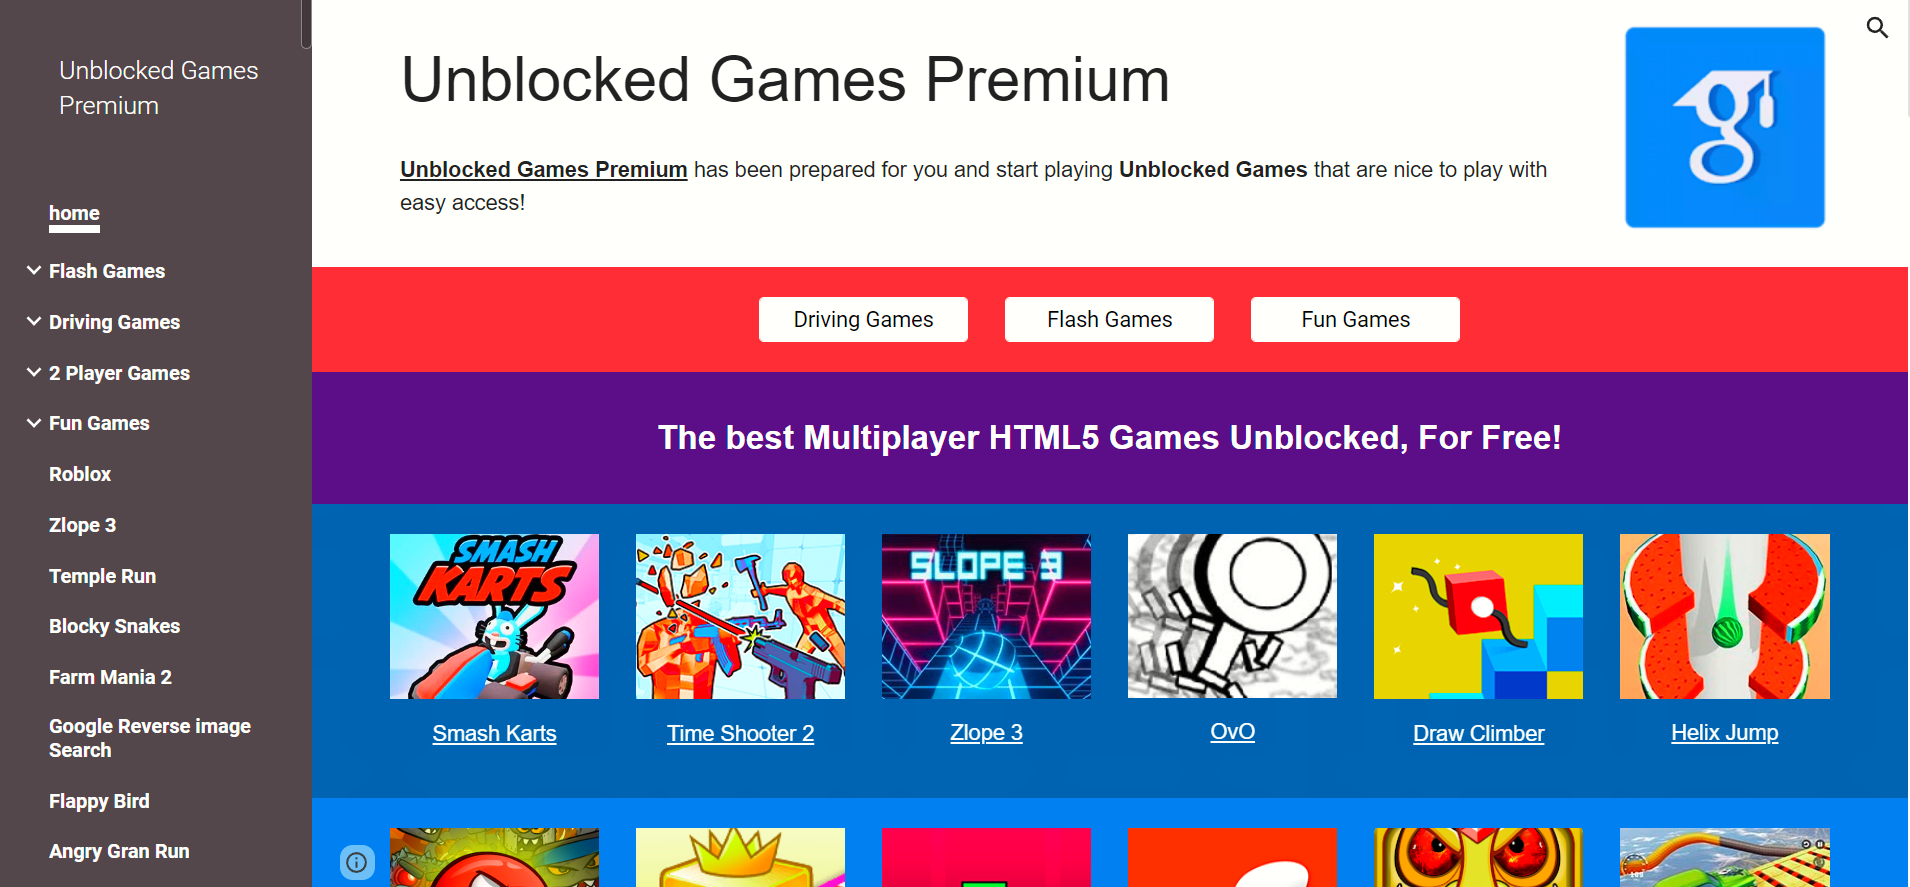 Unblocked games Premium